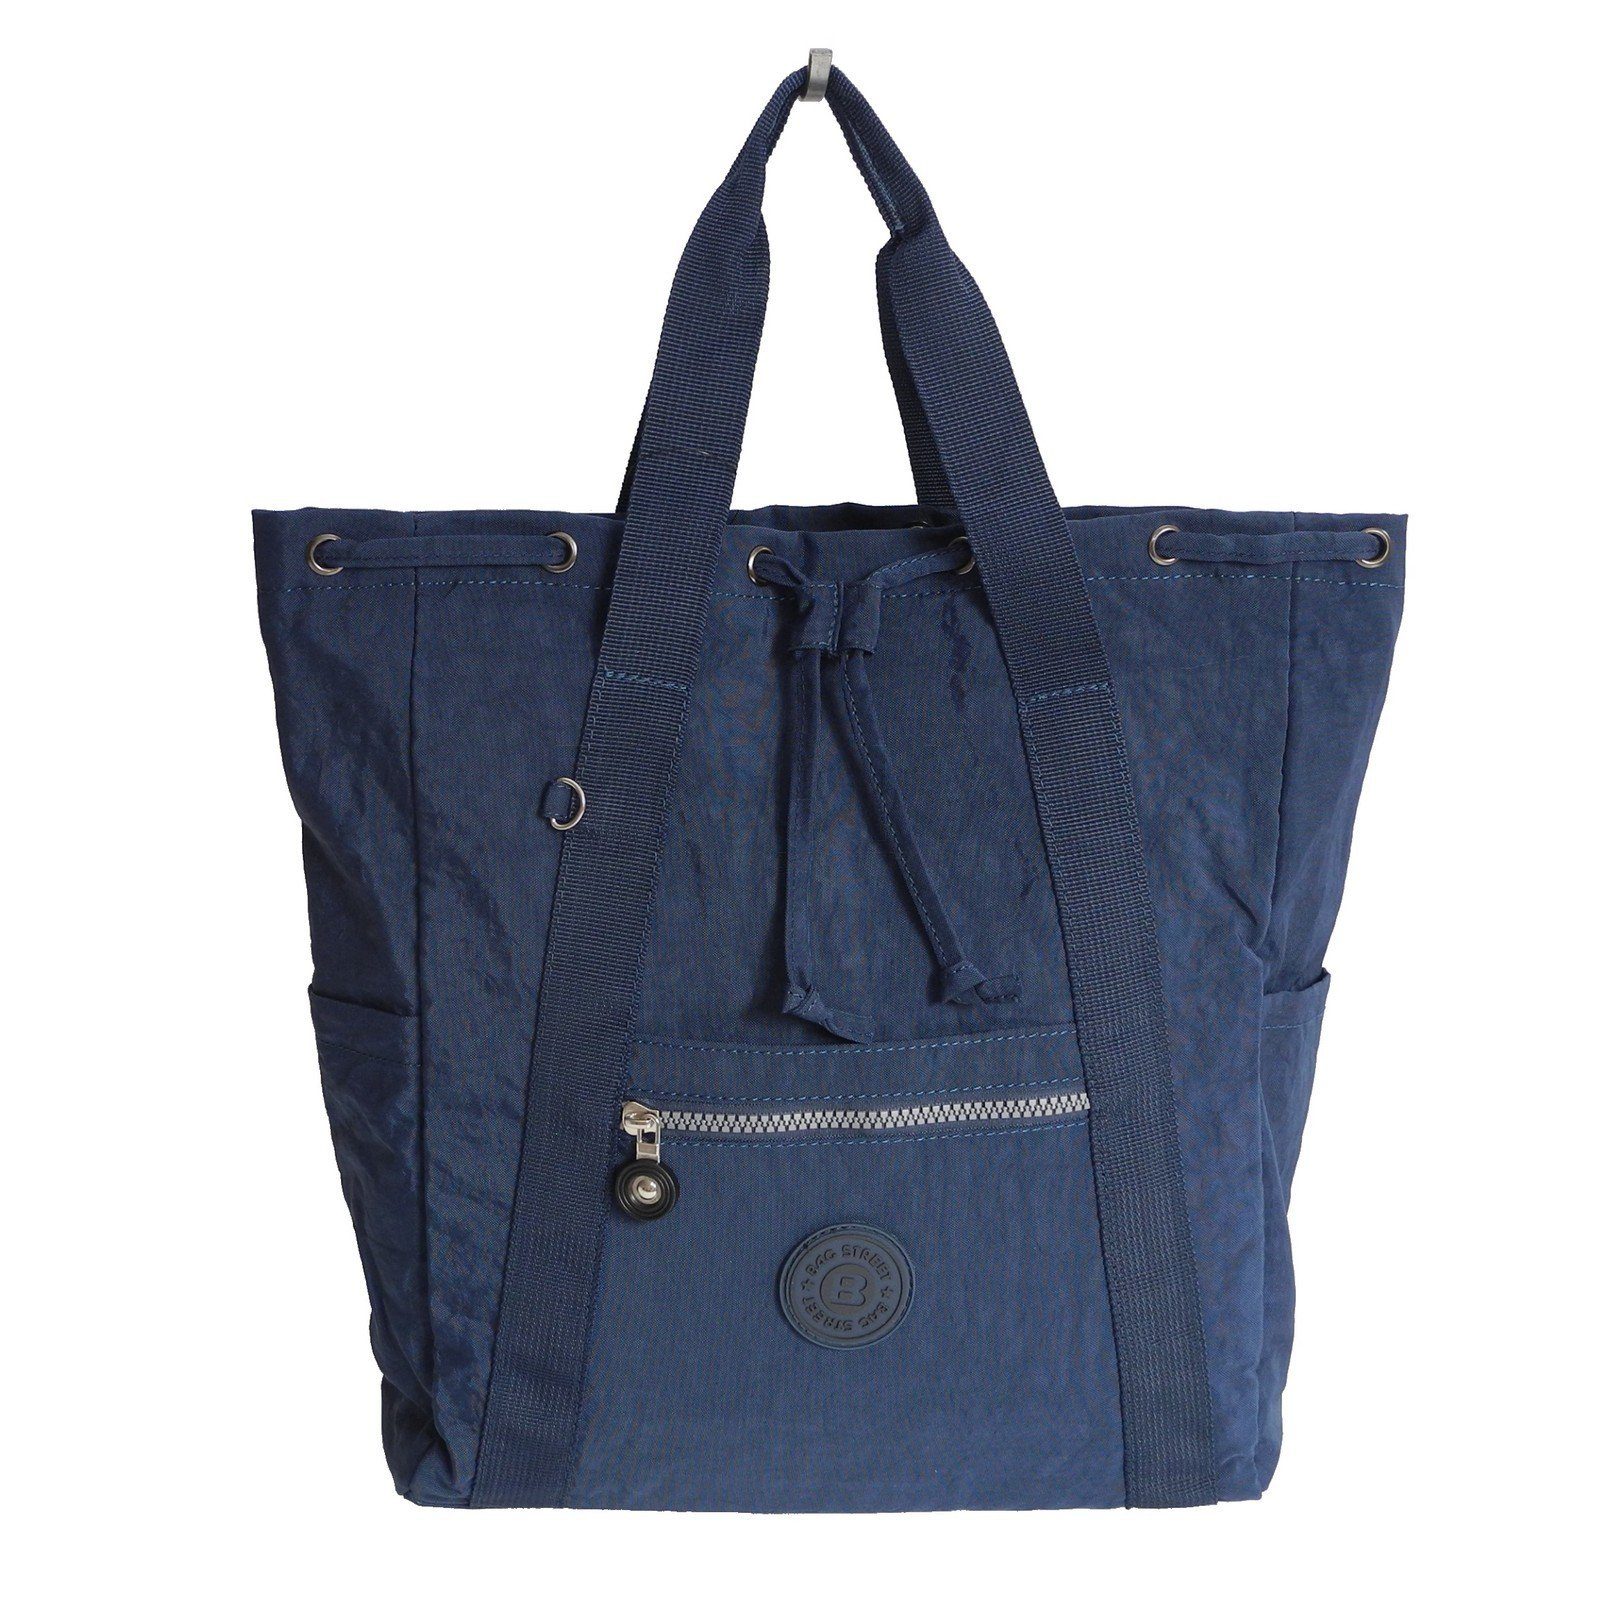 STREET Damen Street leichte Cityrucksack - Rucksackhandtasche Navy BAG Bag